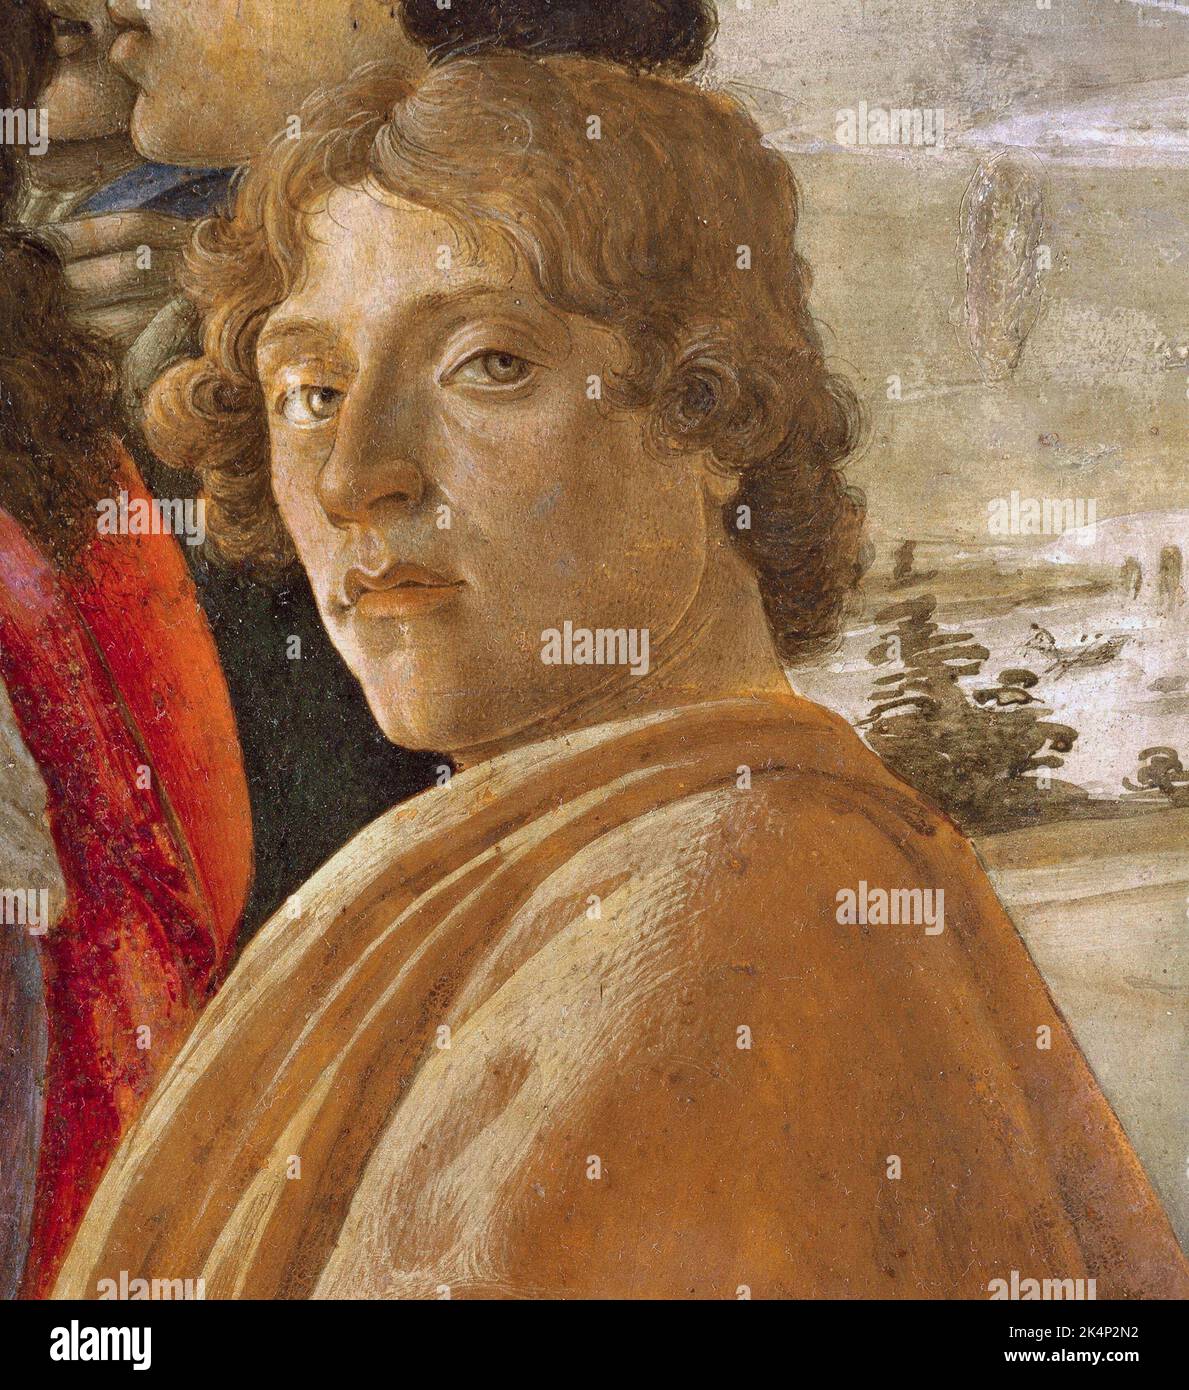 Botticelli, Alessandro di Mariano di Vanni Filipepi (c. 1445 – 1510), detto Sandro Botticelli, pittore italiano del primo Rinascimento. Foto Stock